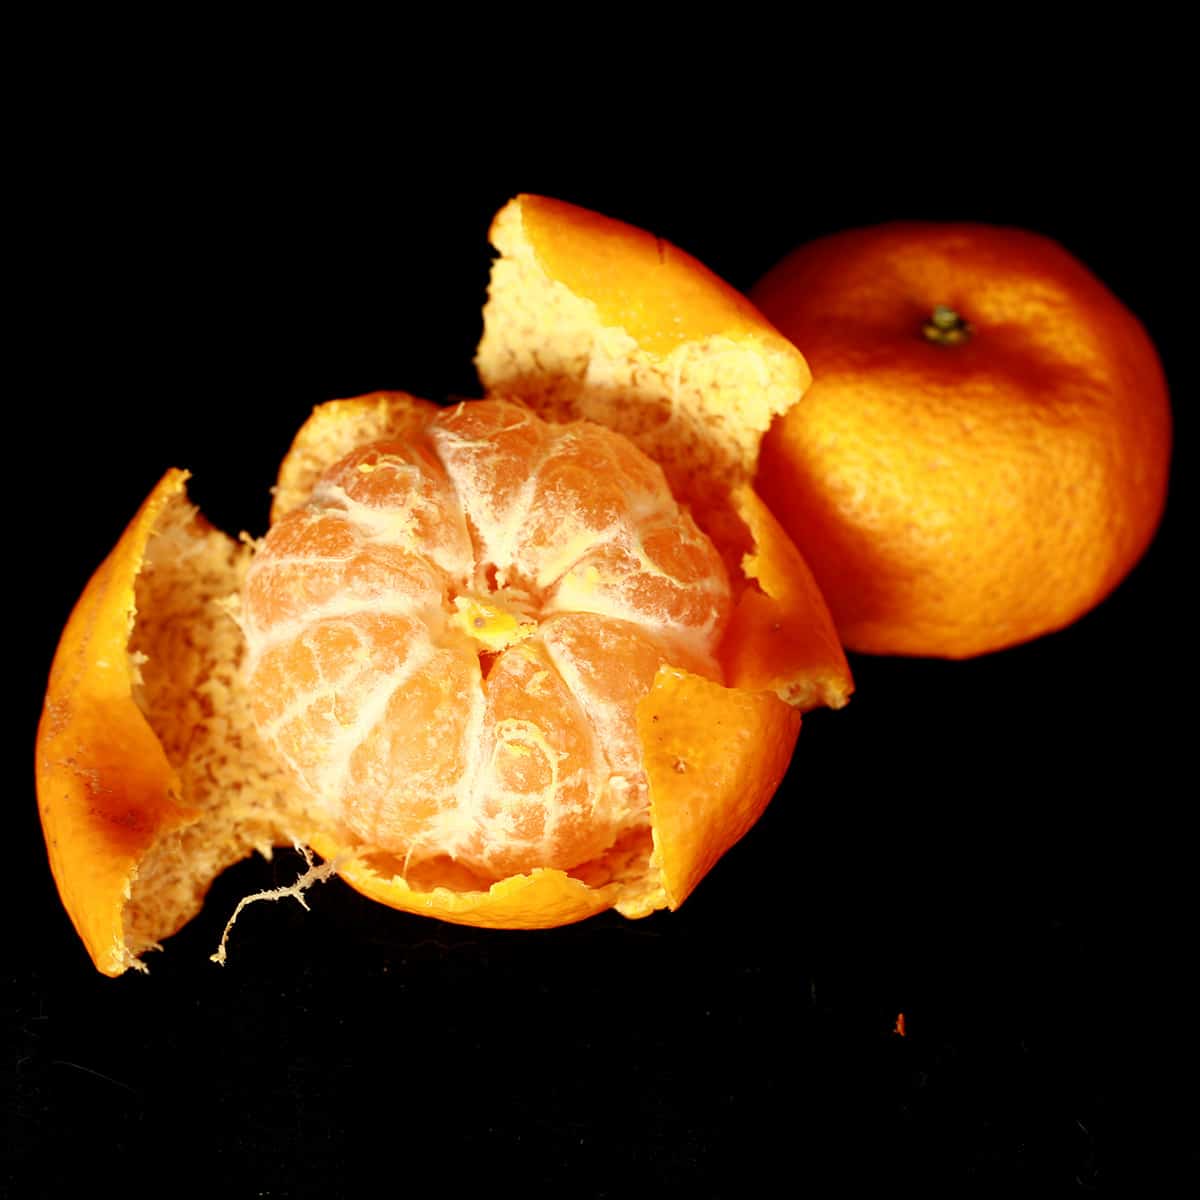 2 Kishu Mandarin oranges, one peeled.